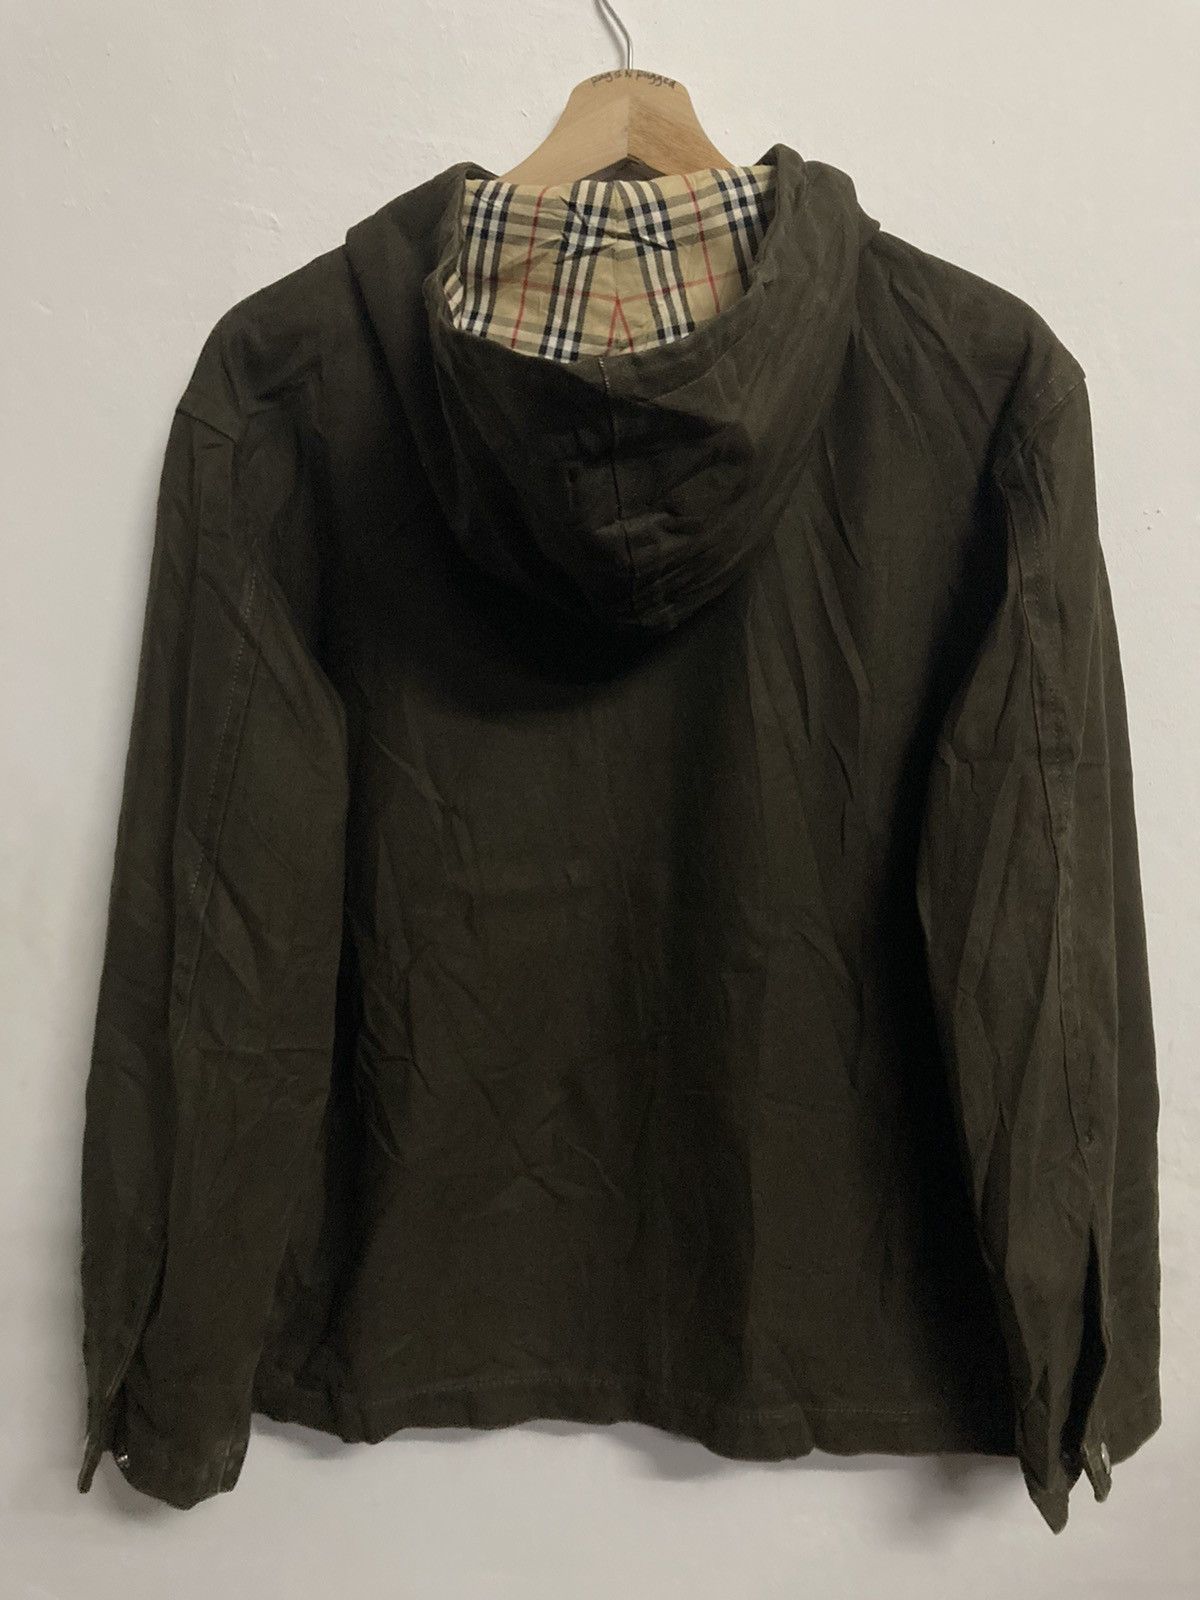 Burberrys Blue Label Hooded Jacket in Size 38 - 2